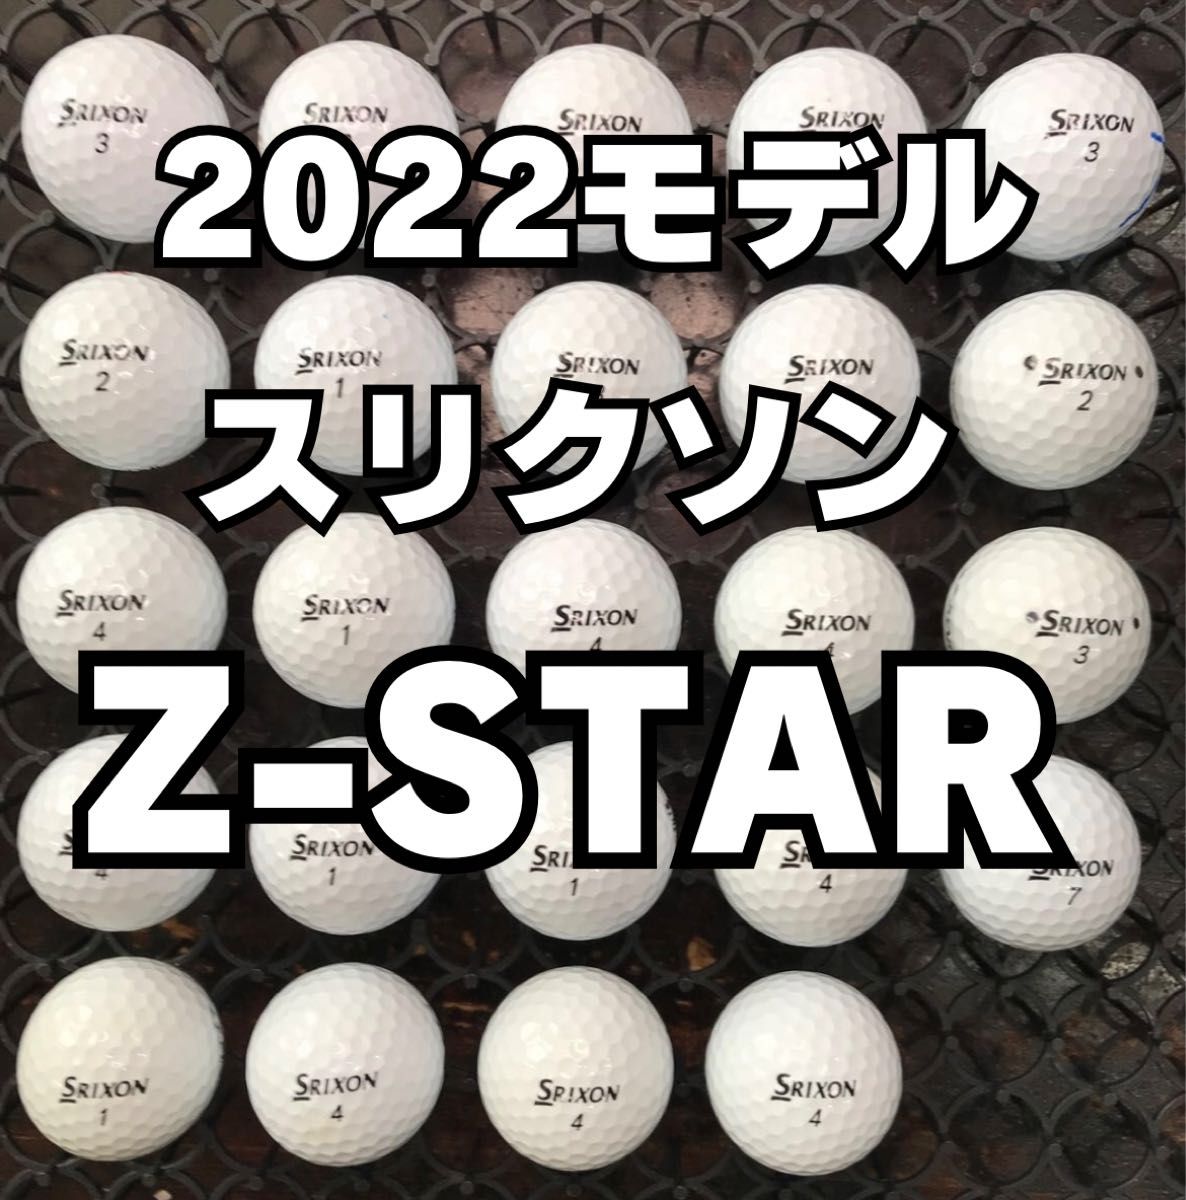 2 2022モデル スリクソン  Z-STAR ロストボール 24球